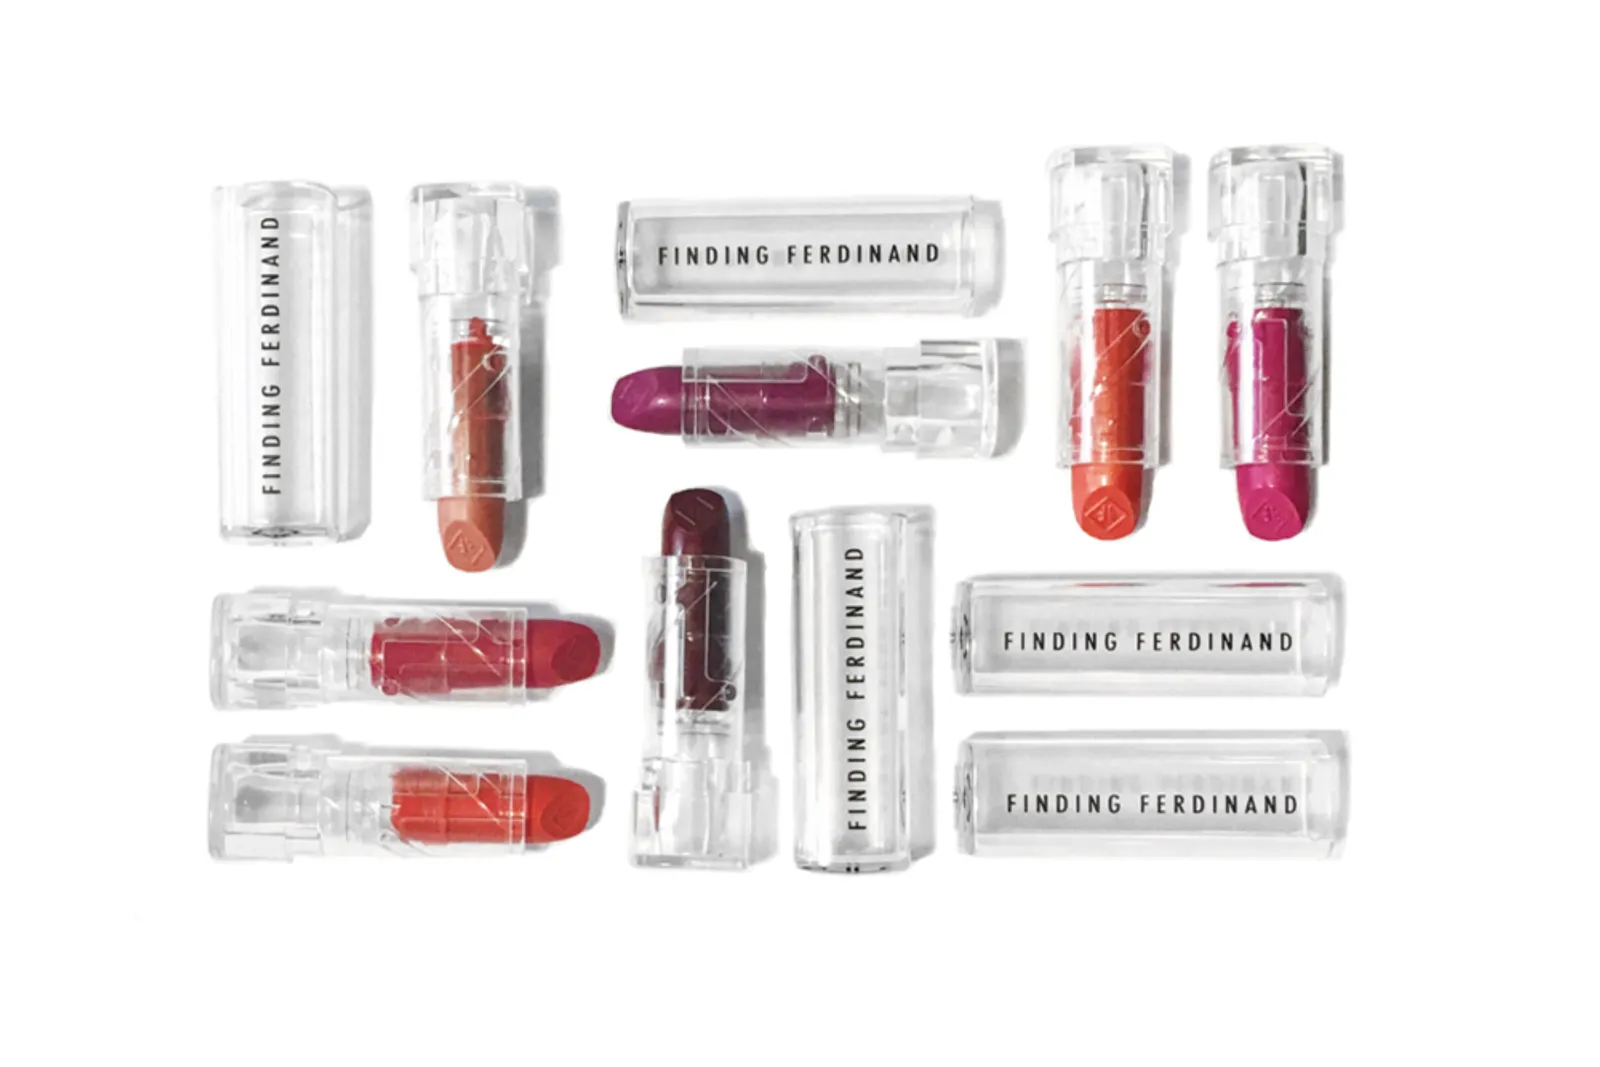 Produk Kosmetik Ini Ajak Kamu Buat Sendiri Lipstik dan Makeup Palete Secara Online